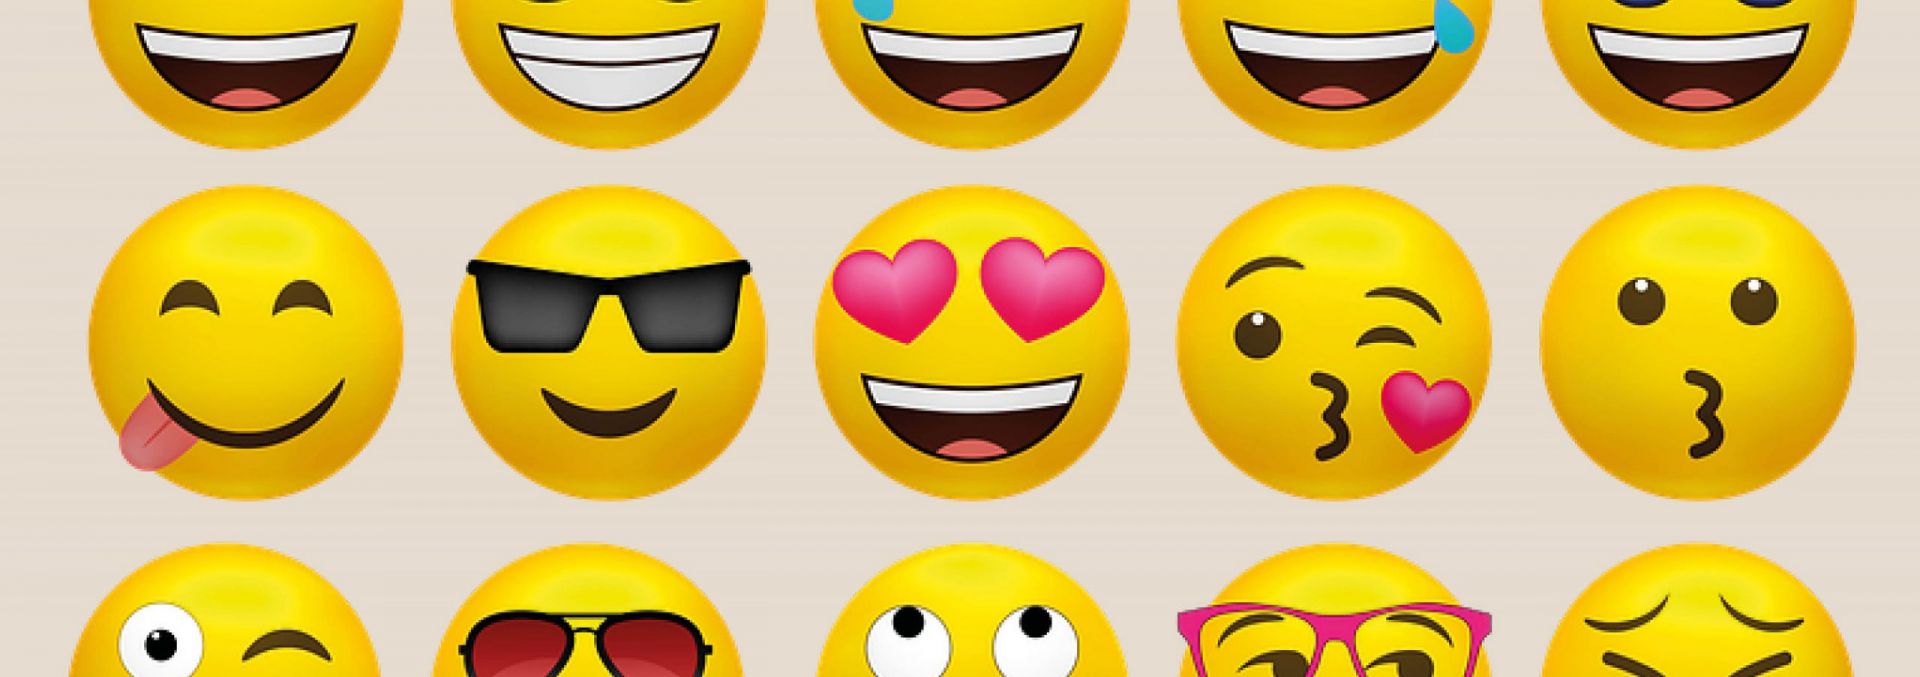 Gula emojis som gör olika ansiktsuttryck.